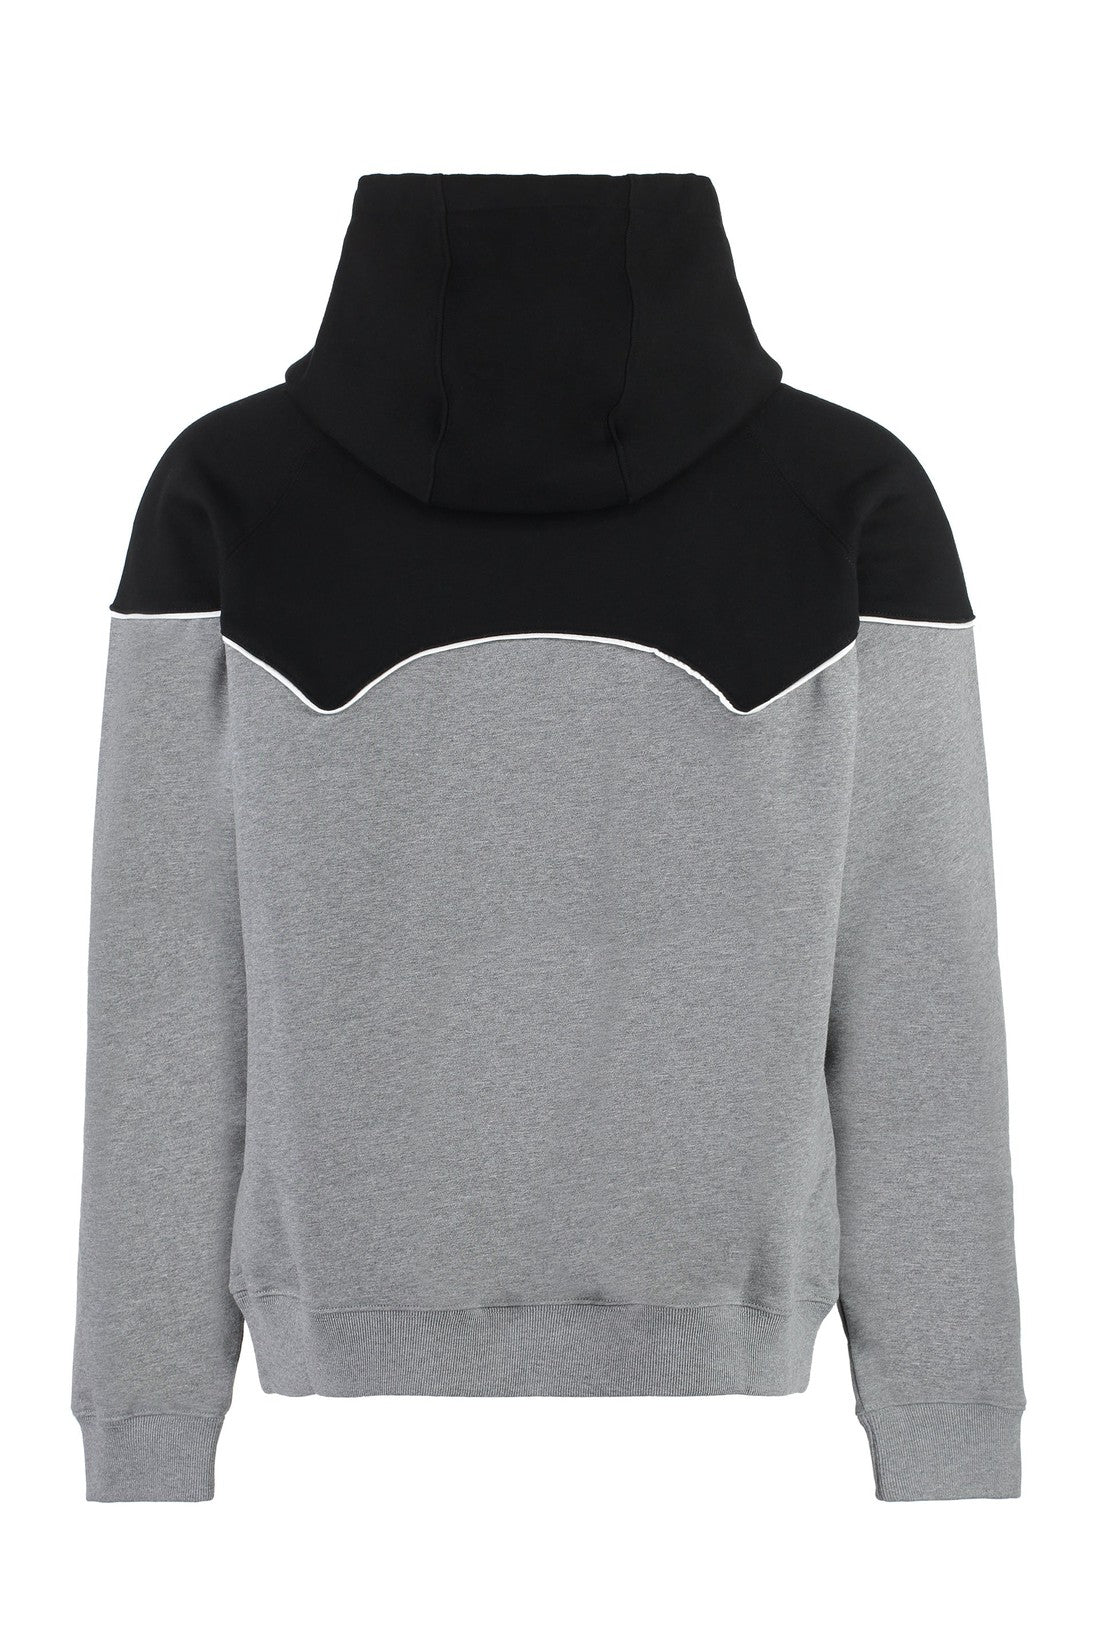 Versace-OUTLET-SALE-Cotton hoodie-ARCHIVIST